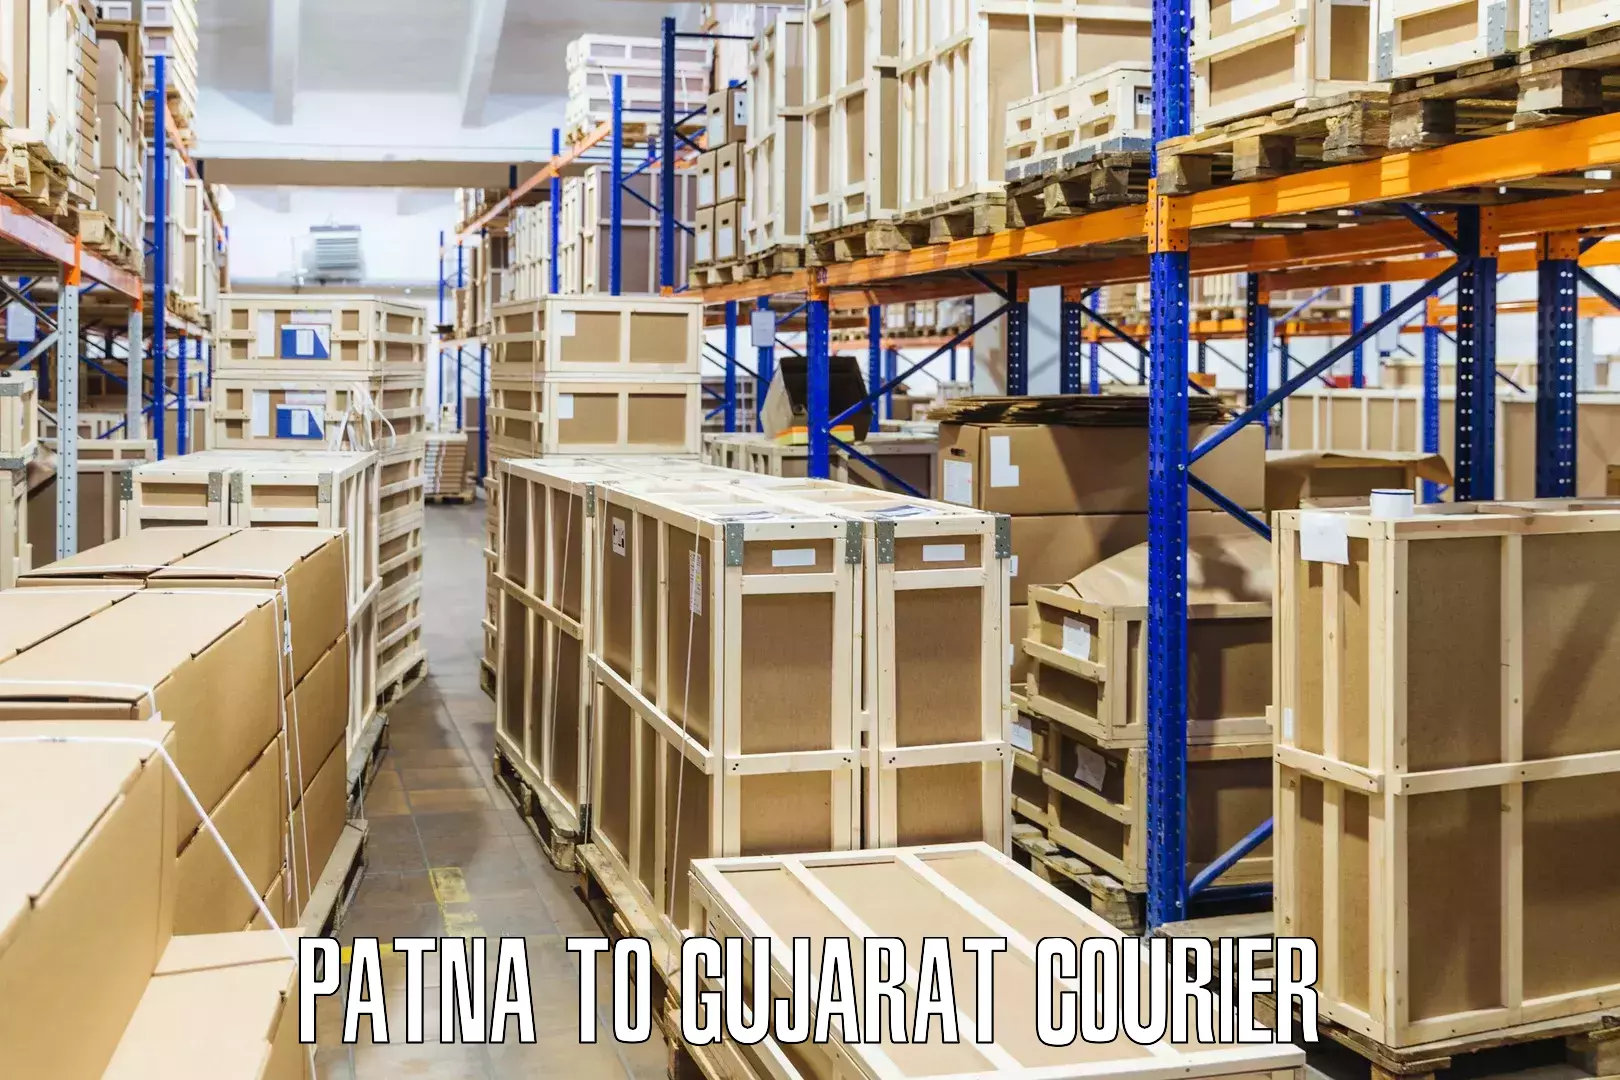 Courier app Patna to Sami